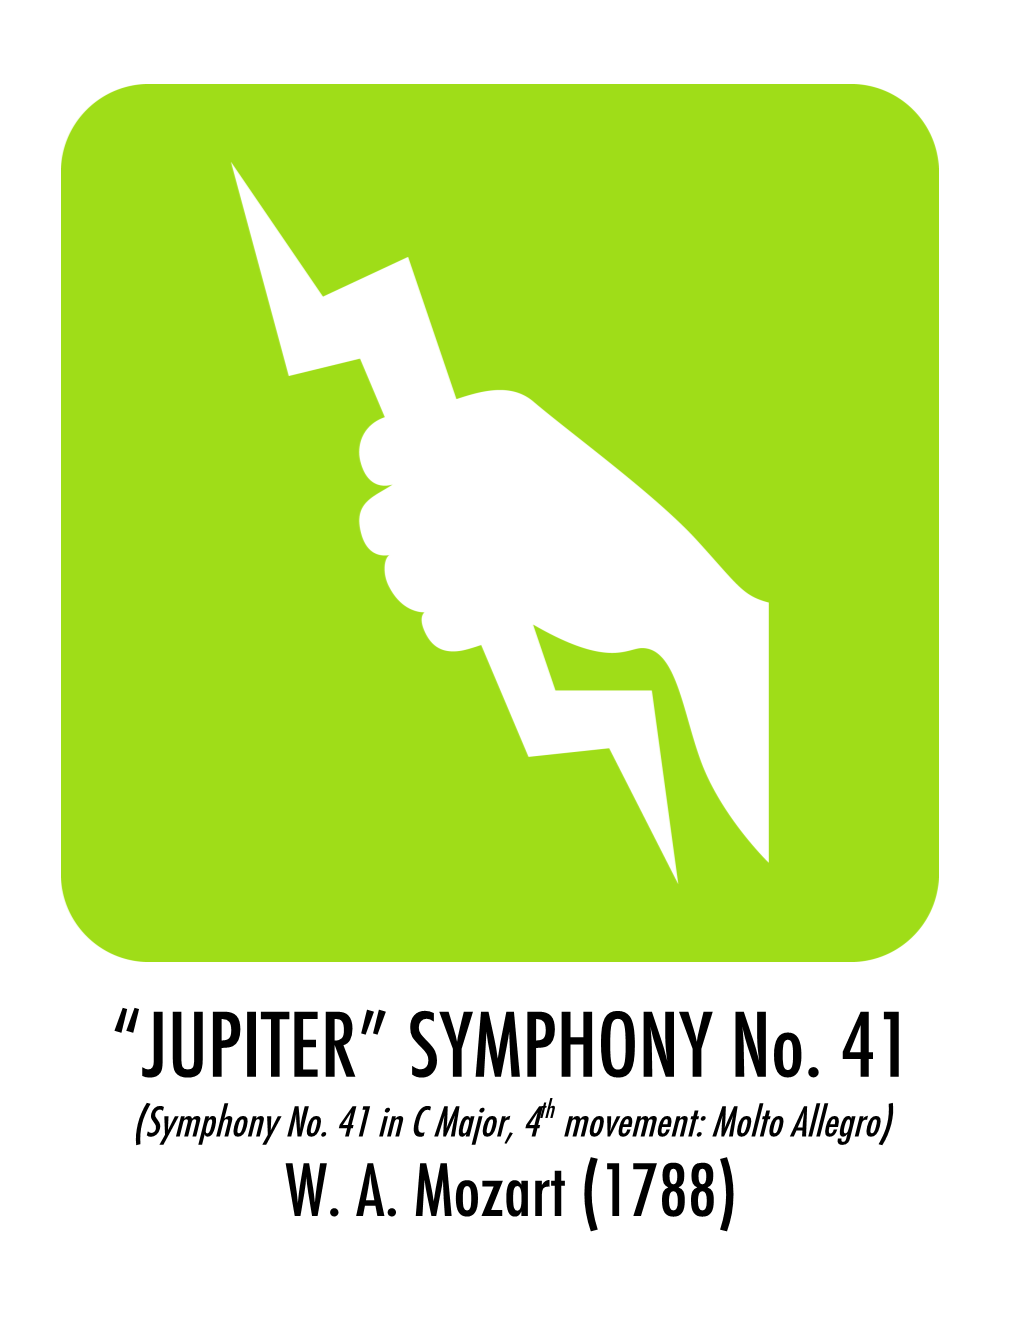 Mozart: “Jupiter” Symphony No. 41, 4Th Movement (Molto Allegro)